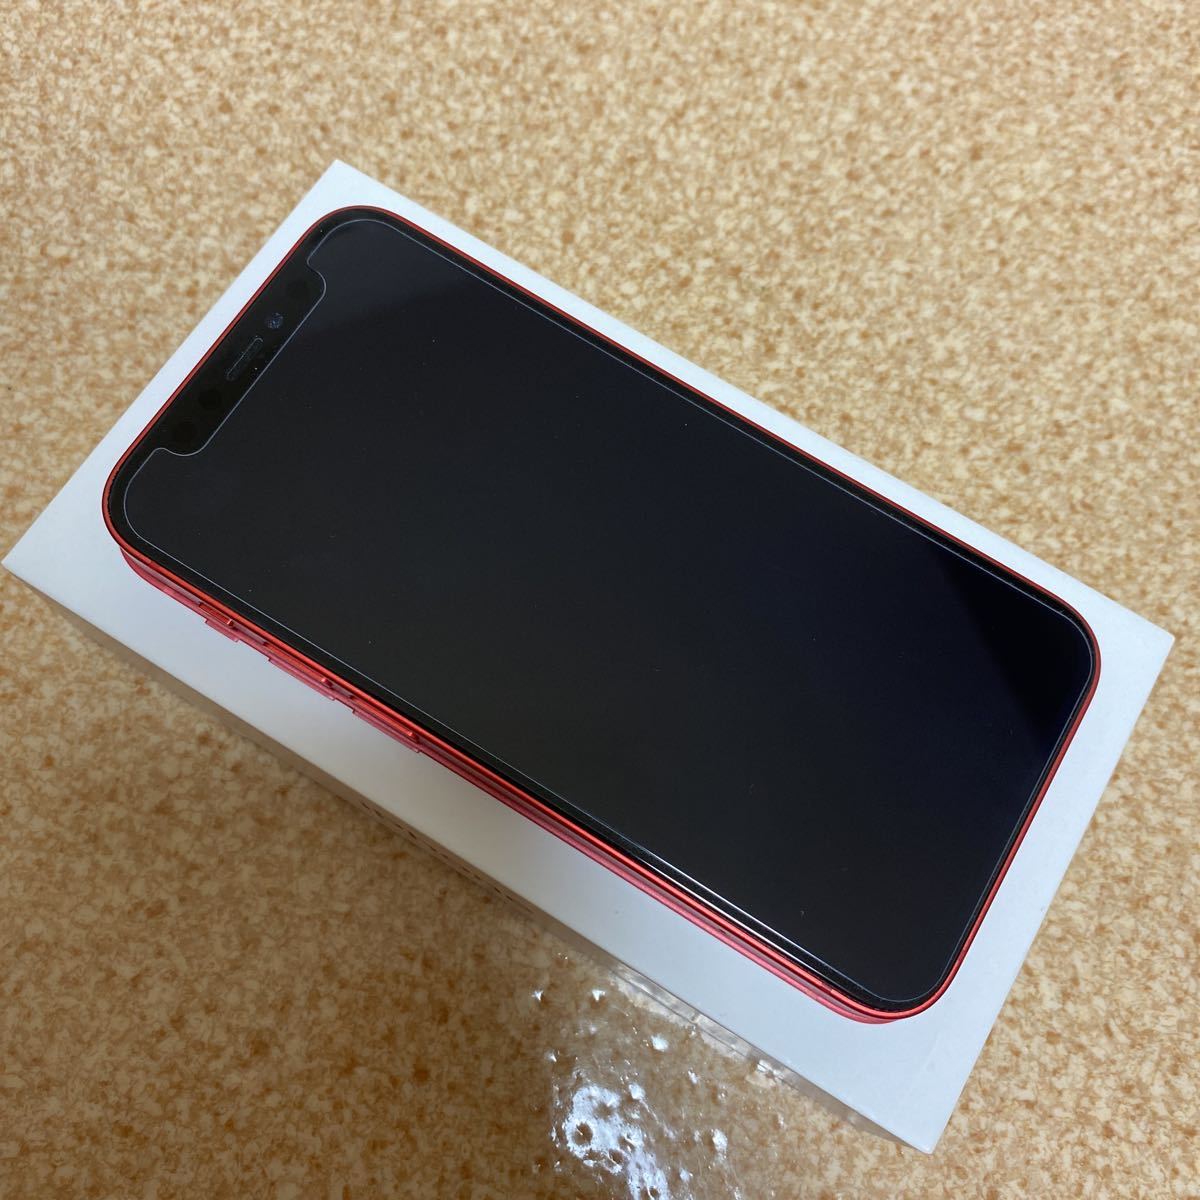 新作人気モデル 12 iPhone mini 128GB レッド iPhone - developpement